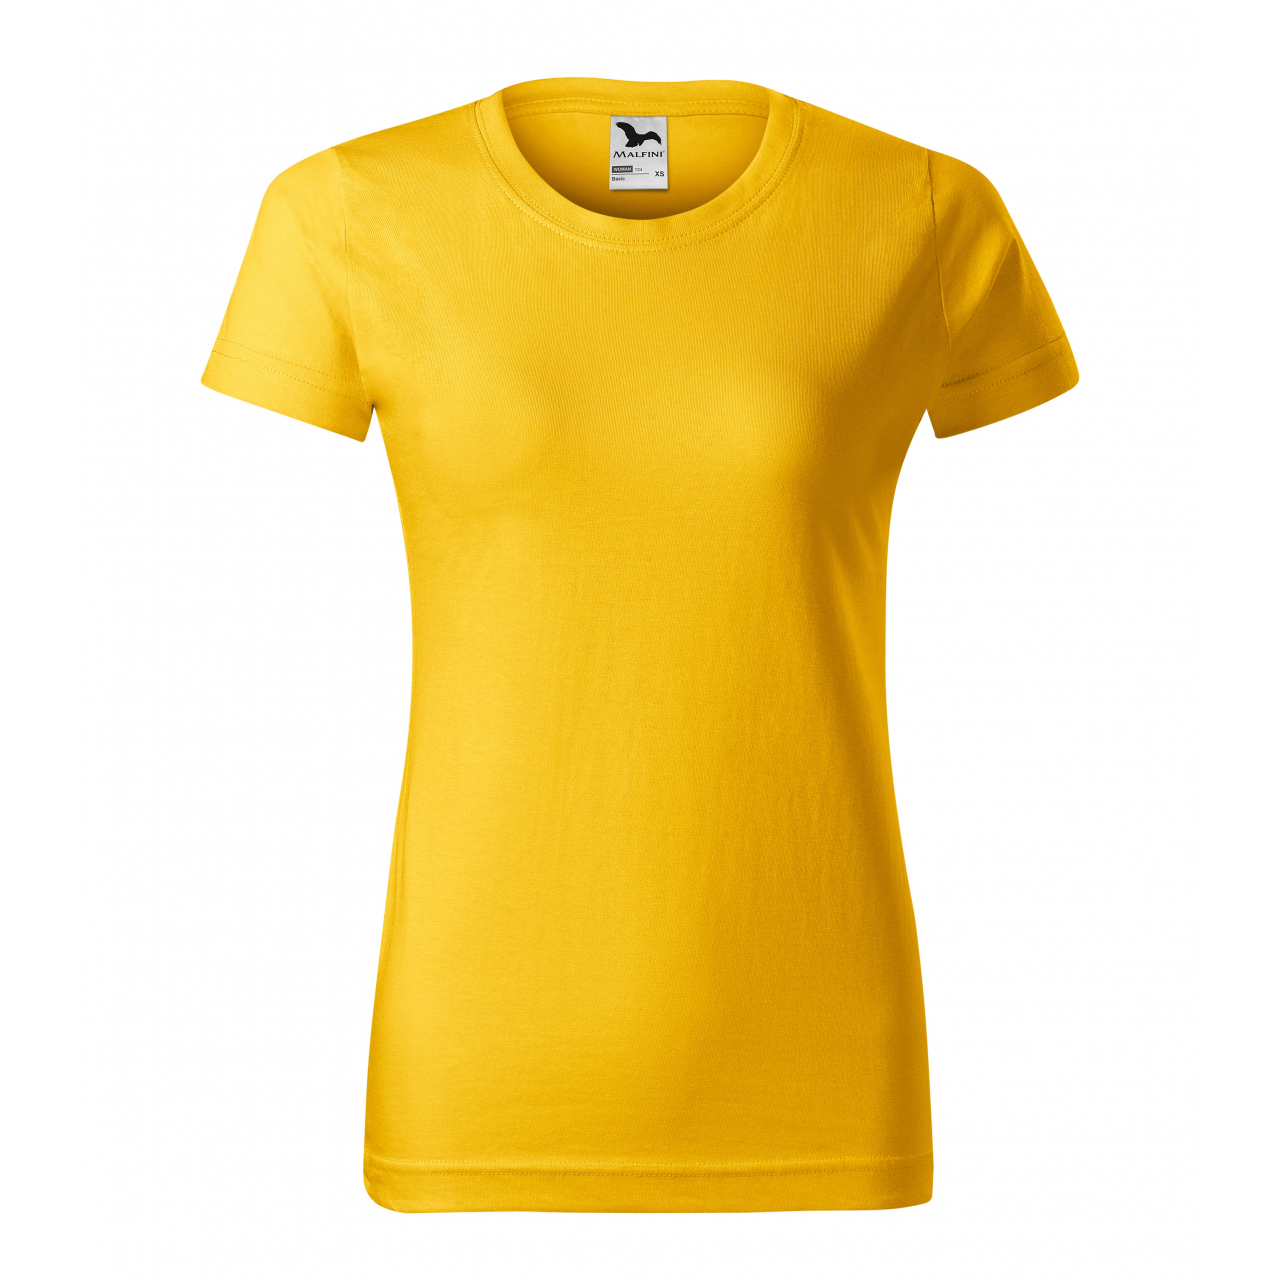 Triko dámské Malfini Basic - žluté, XL